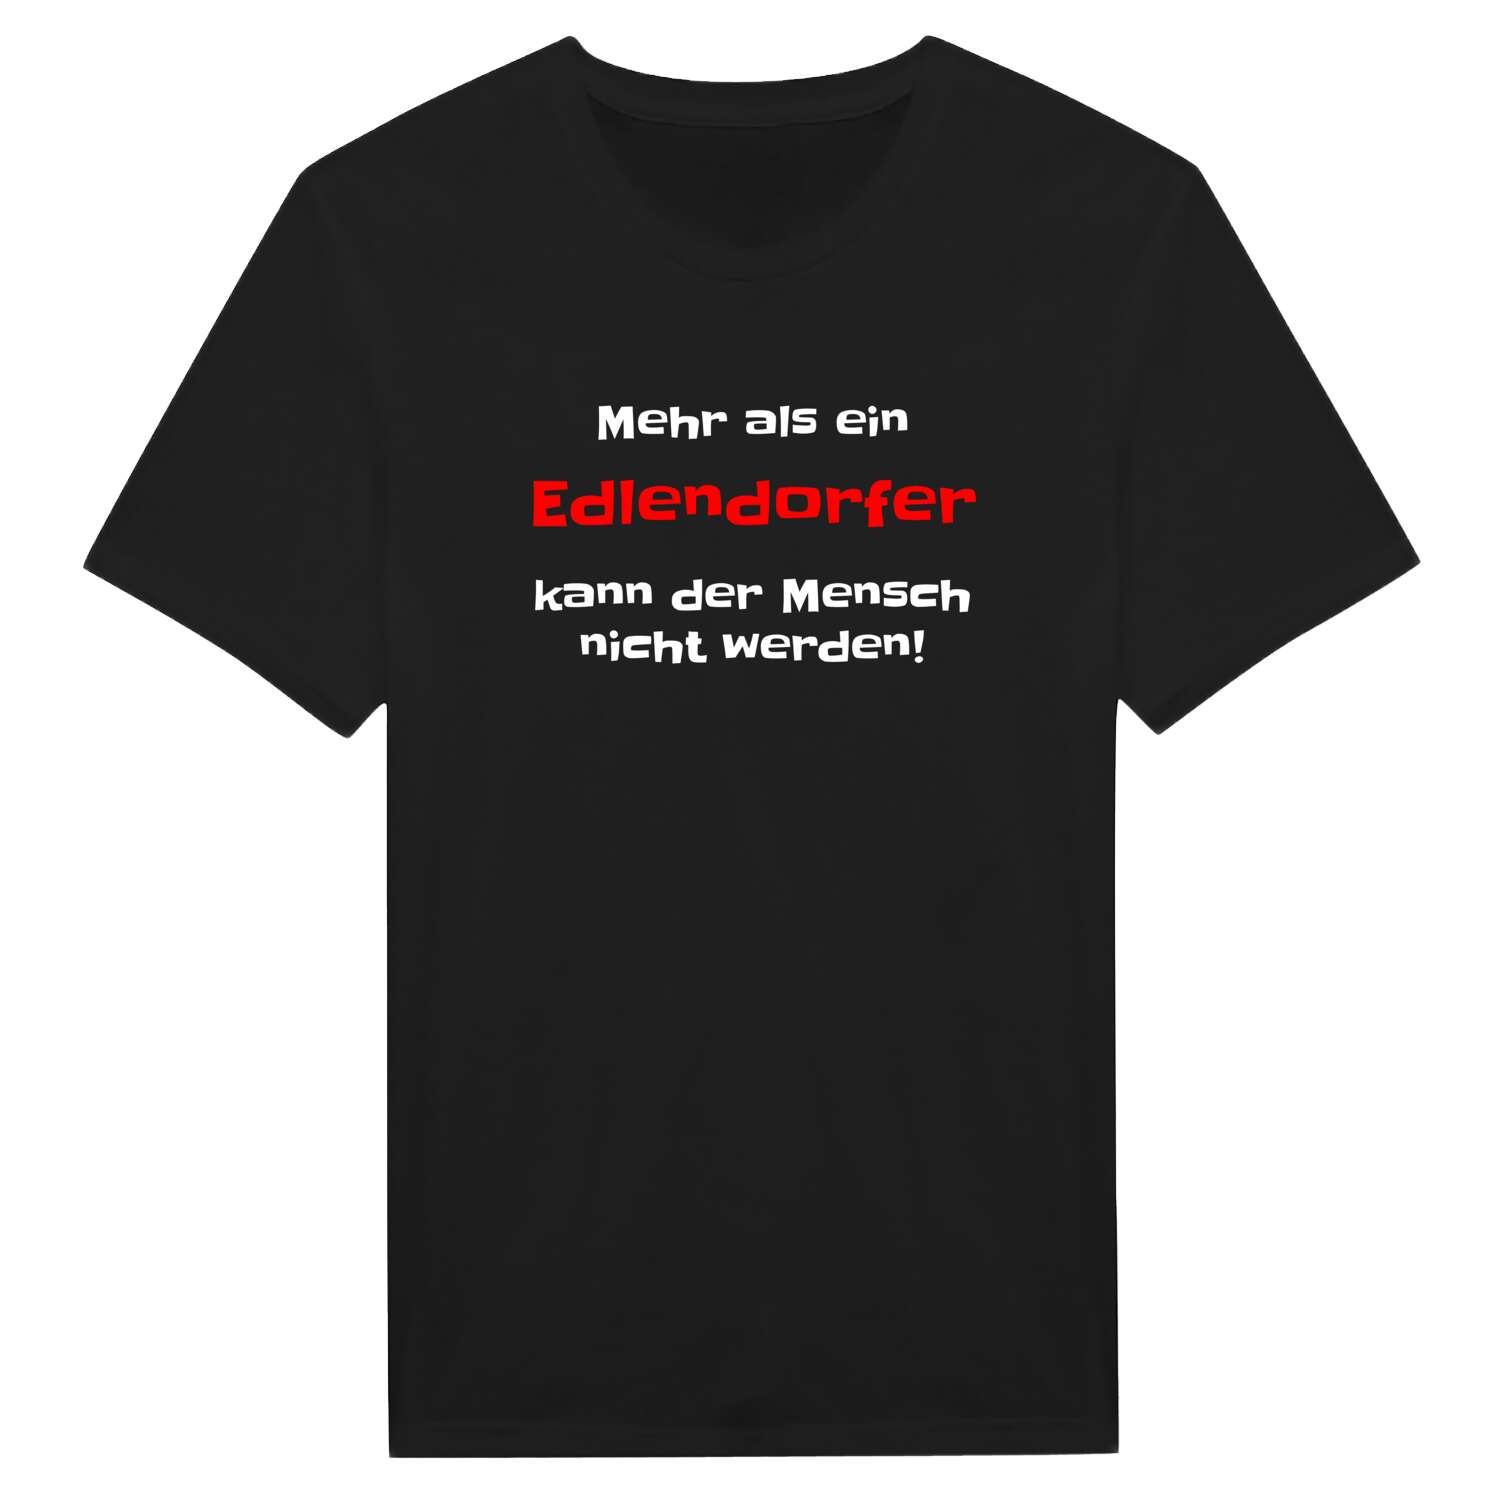 Edlendorf T-Shirt »Mehr als ein«